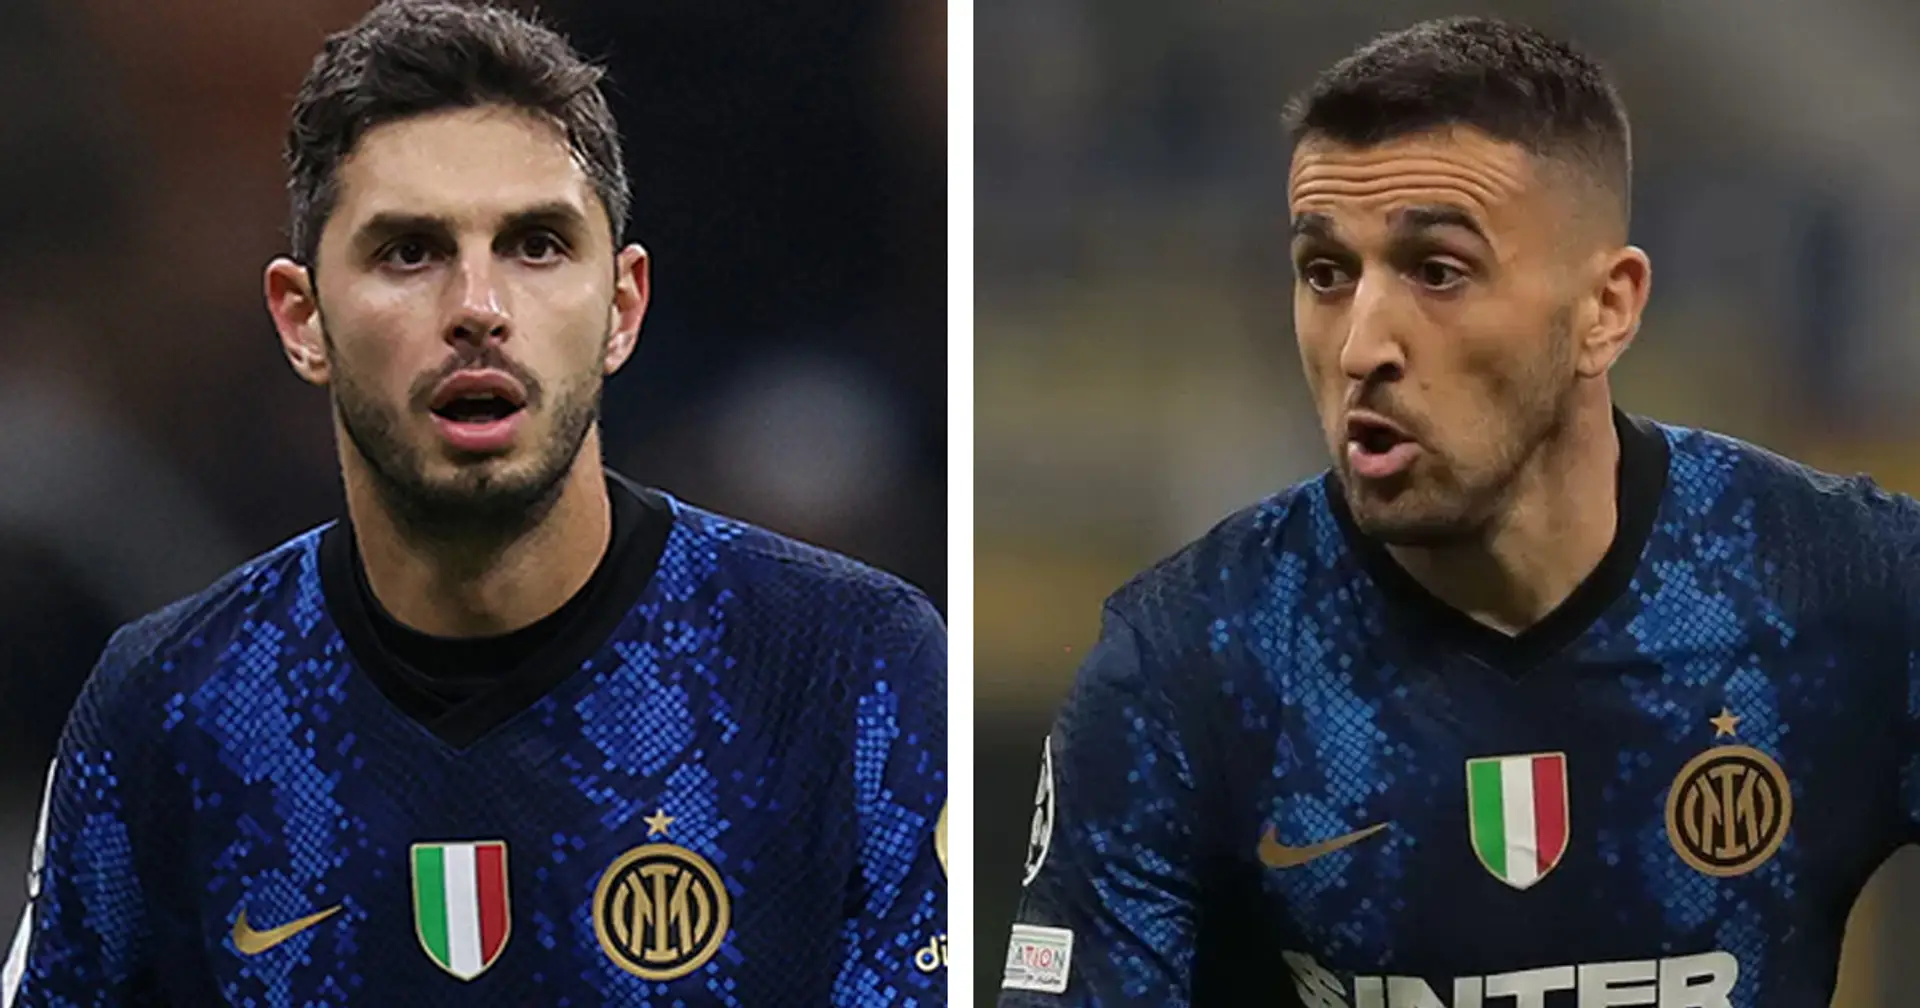 Ranocchia distratto, Vecino impalpabile: le pagelle dei giocatori dell'Inter dopo i primi 45 minuti